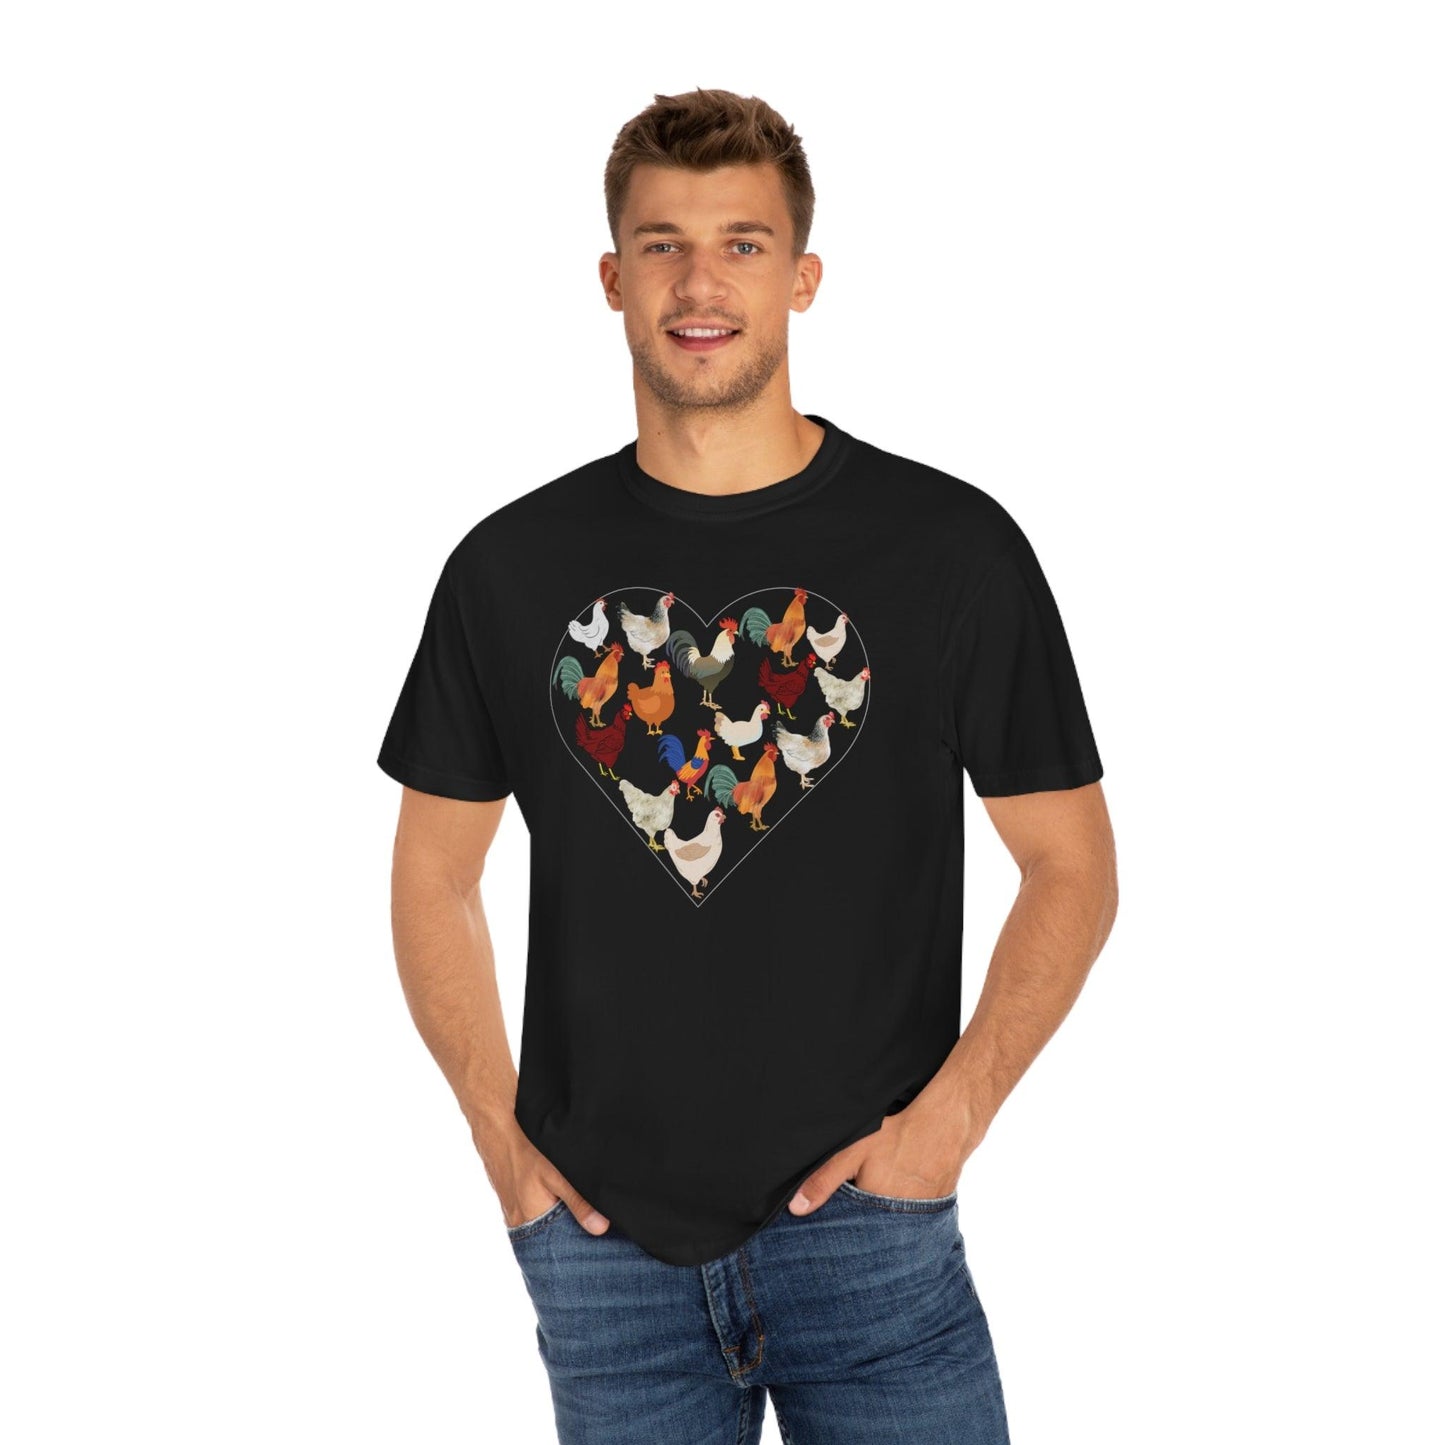 Chicken Shirt Chicken Tee Chicken Owner Gift - Gift For Chicken Lover gift, Chicken lover shirt